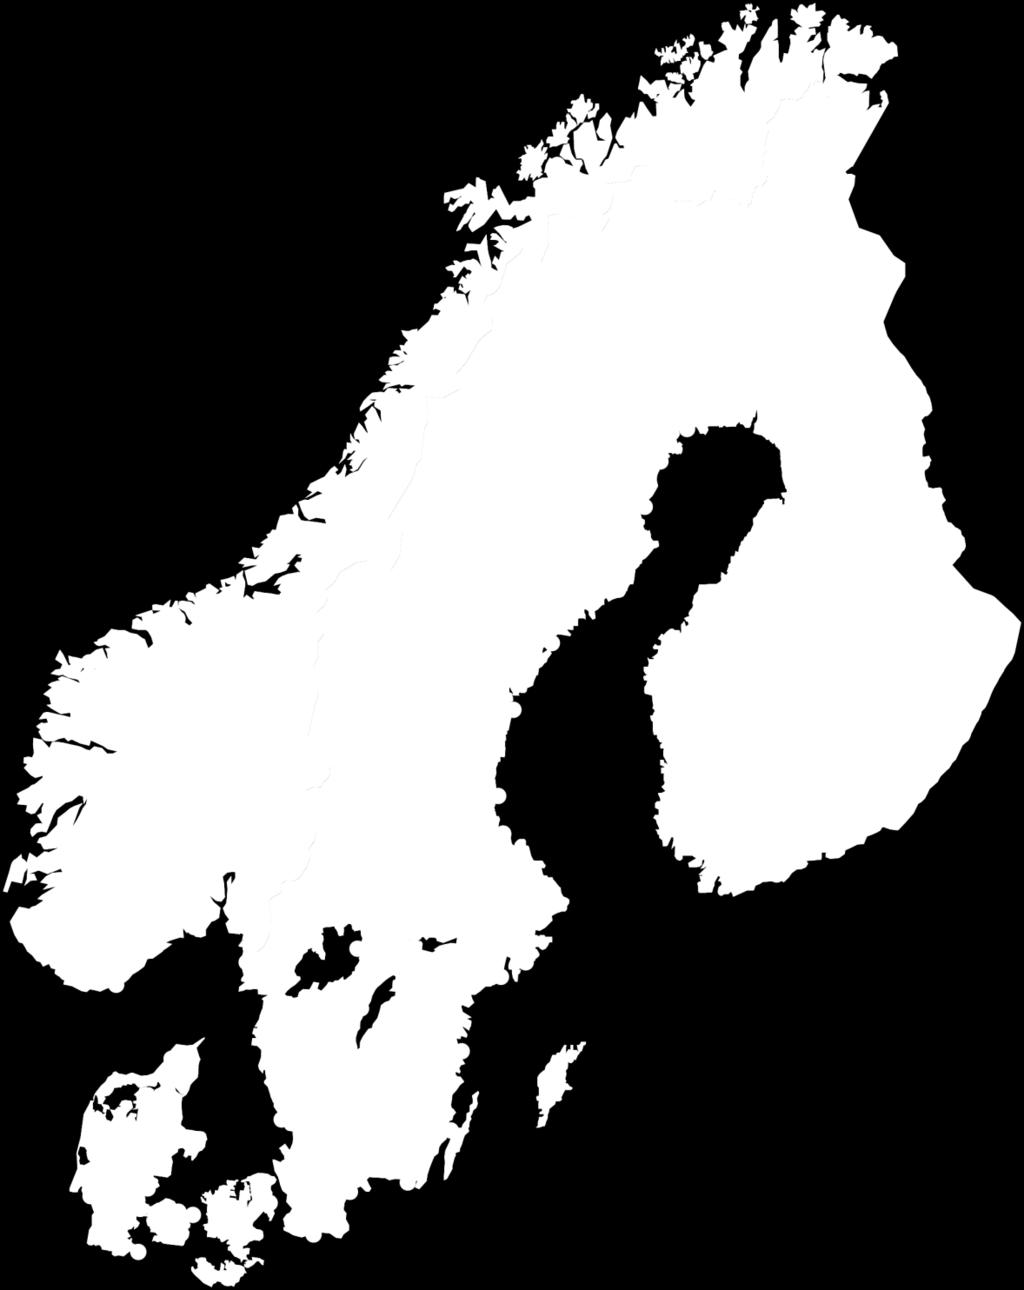 Bravida har omtrent 10.000 ansatte fordelt på 150 ulike steder i Norge, Sverige, Danmark og Finland.